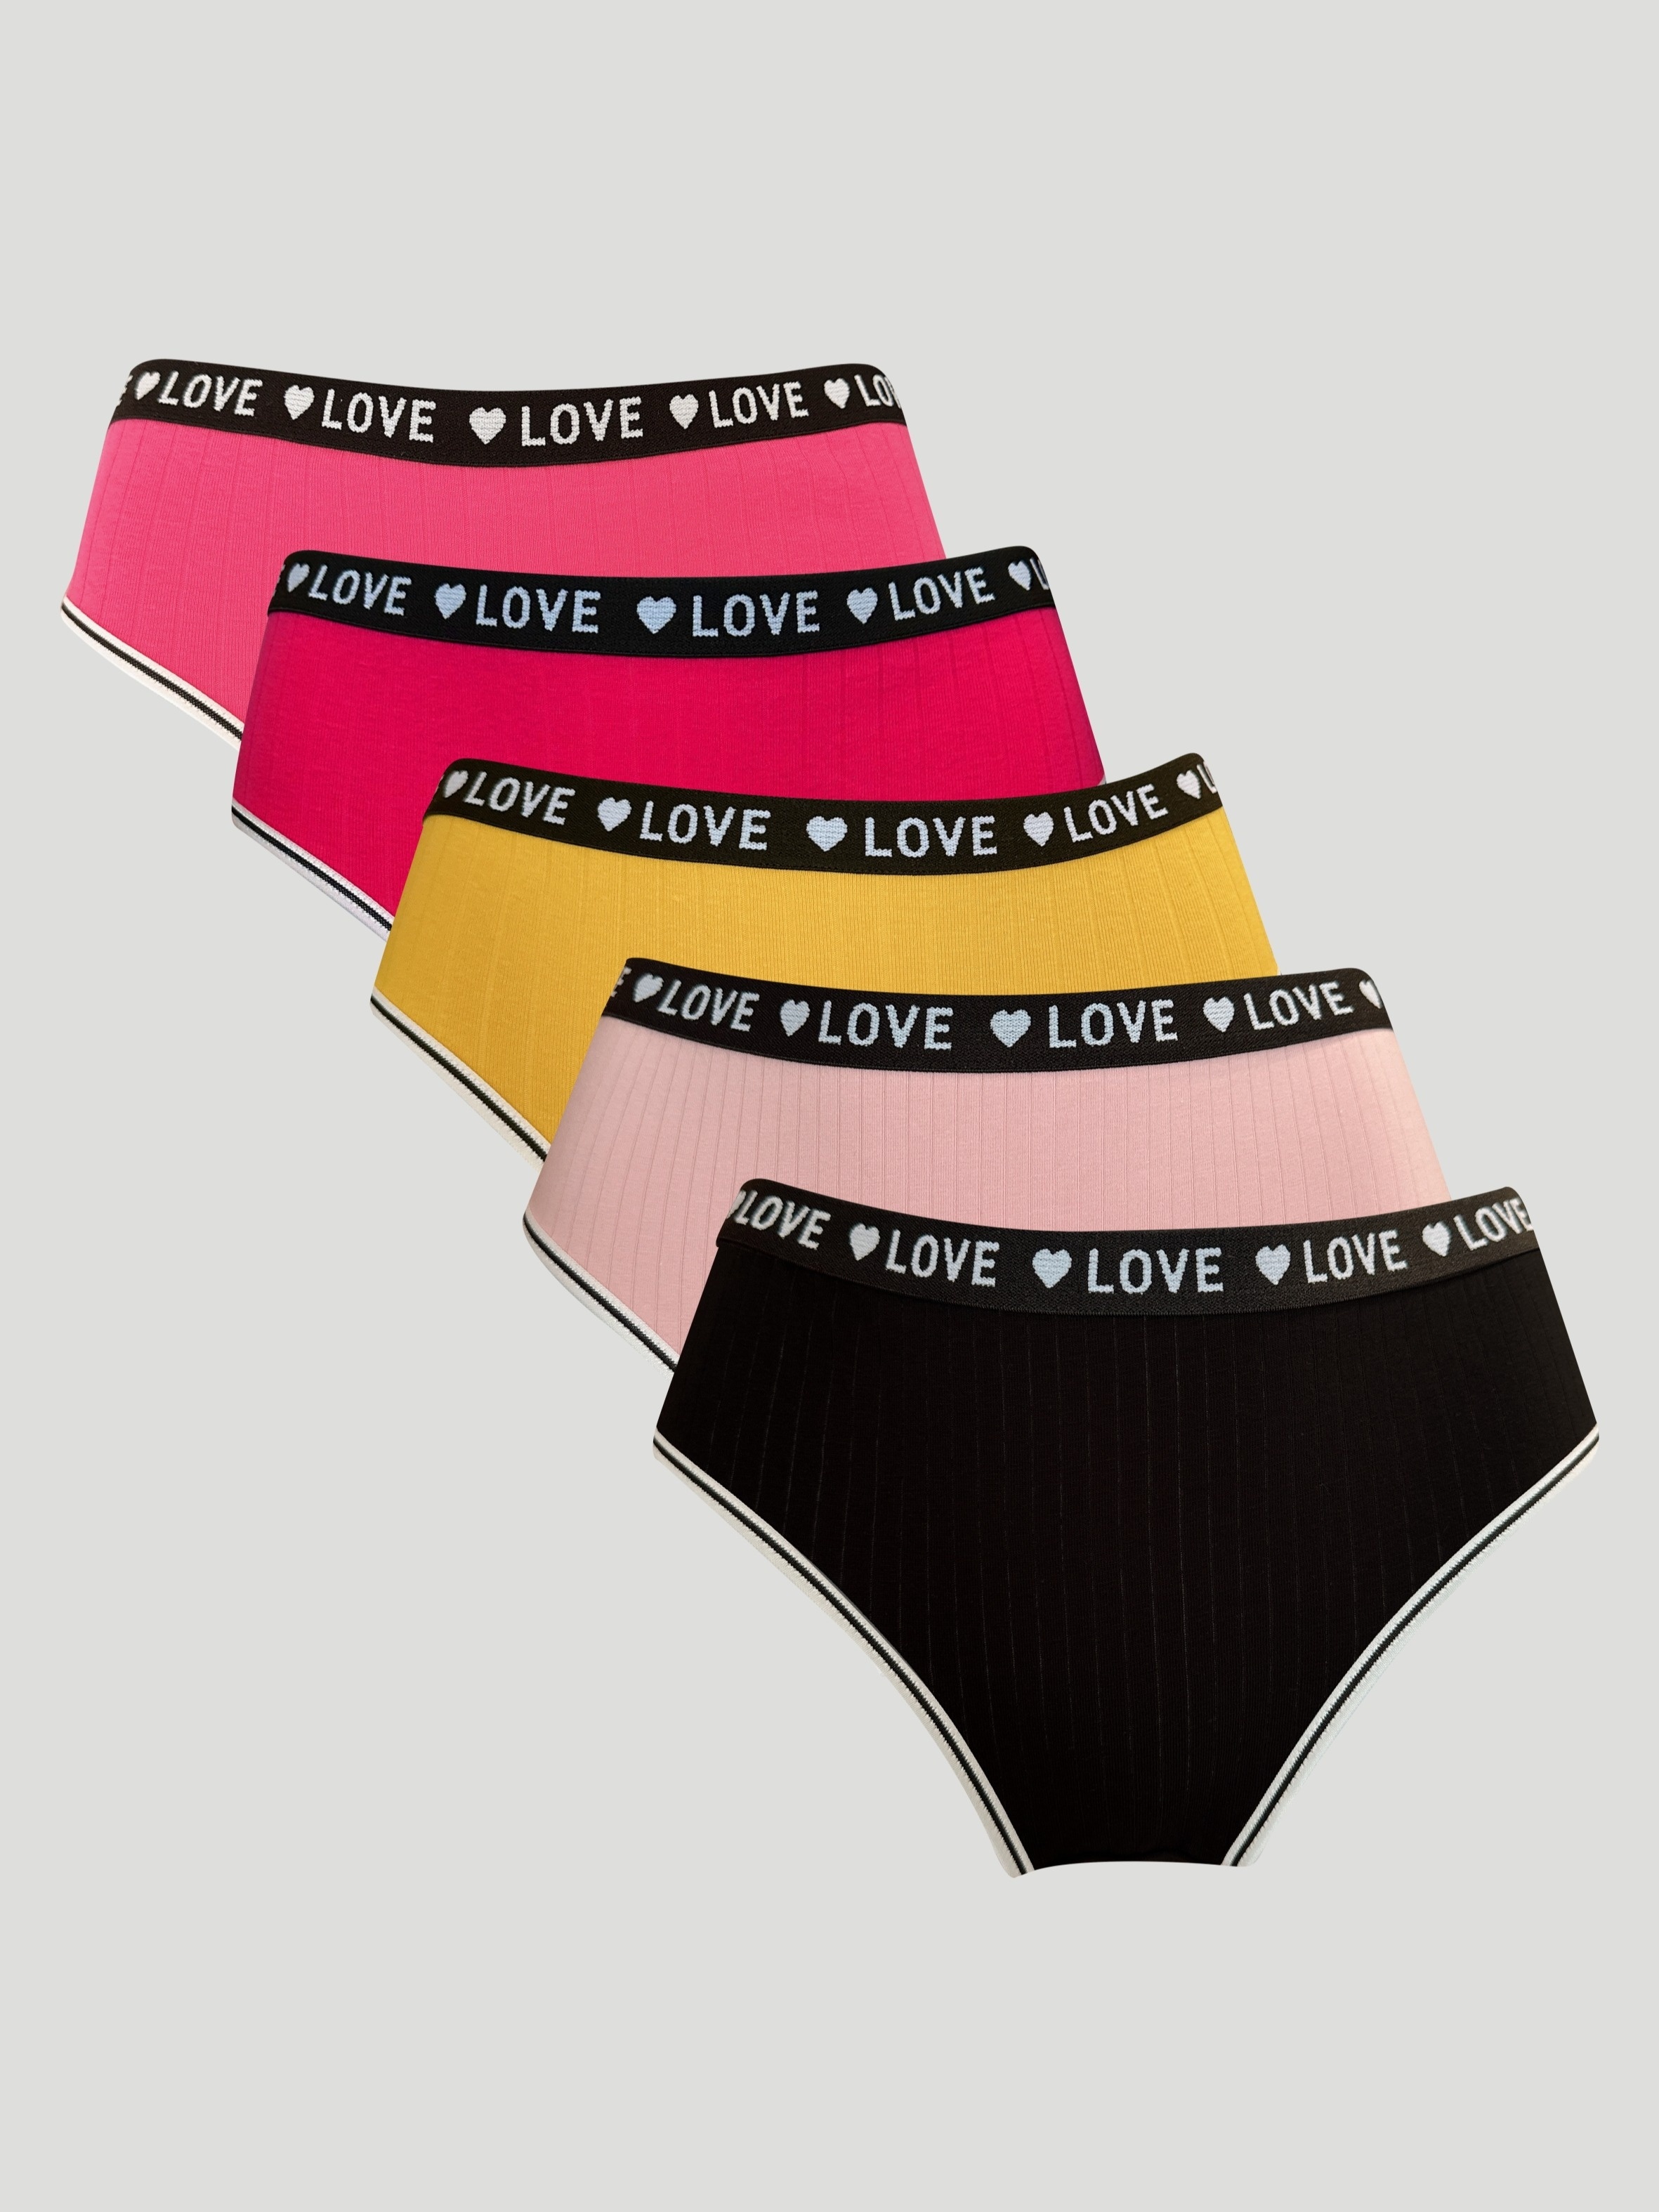 Gap Love Panties for Women